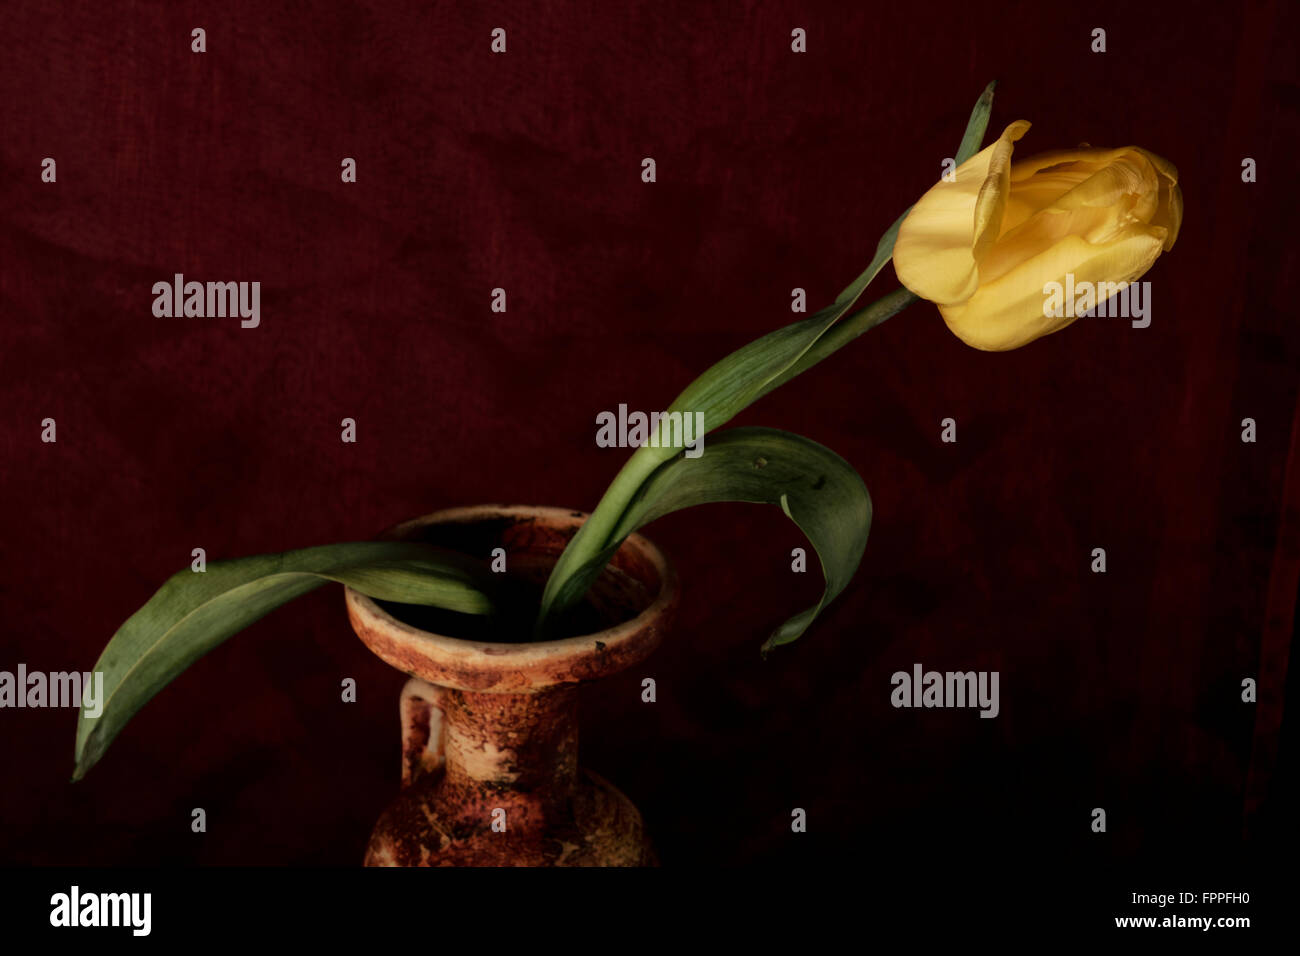 Gelbe Tulpe in einer Keramikvase, Stillleben, dunklen roten Teppich Hintergrund Hintergrund Stockfoto